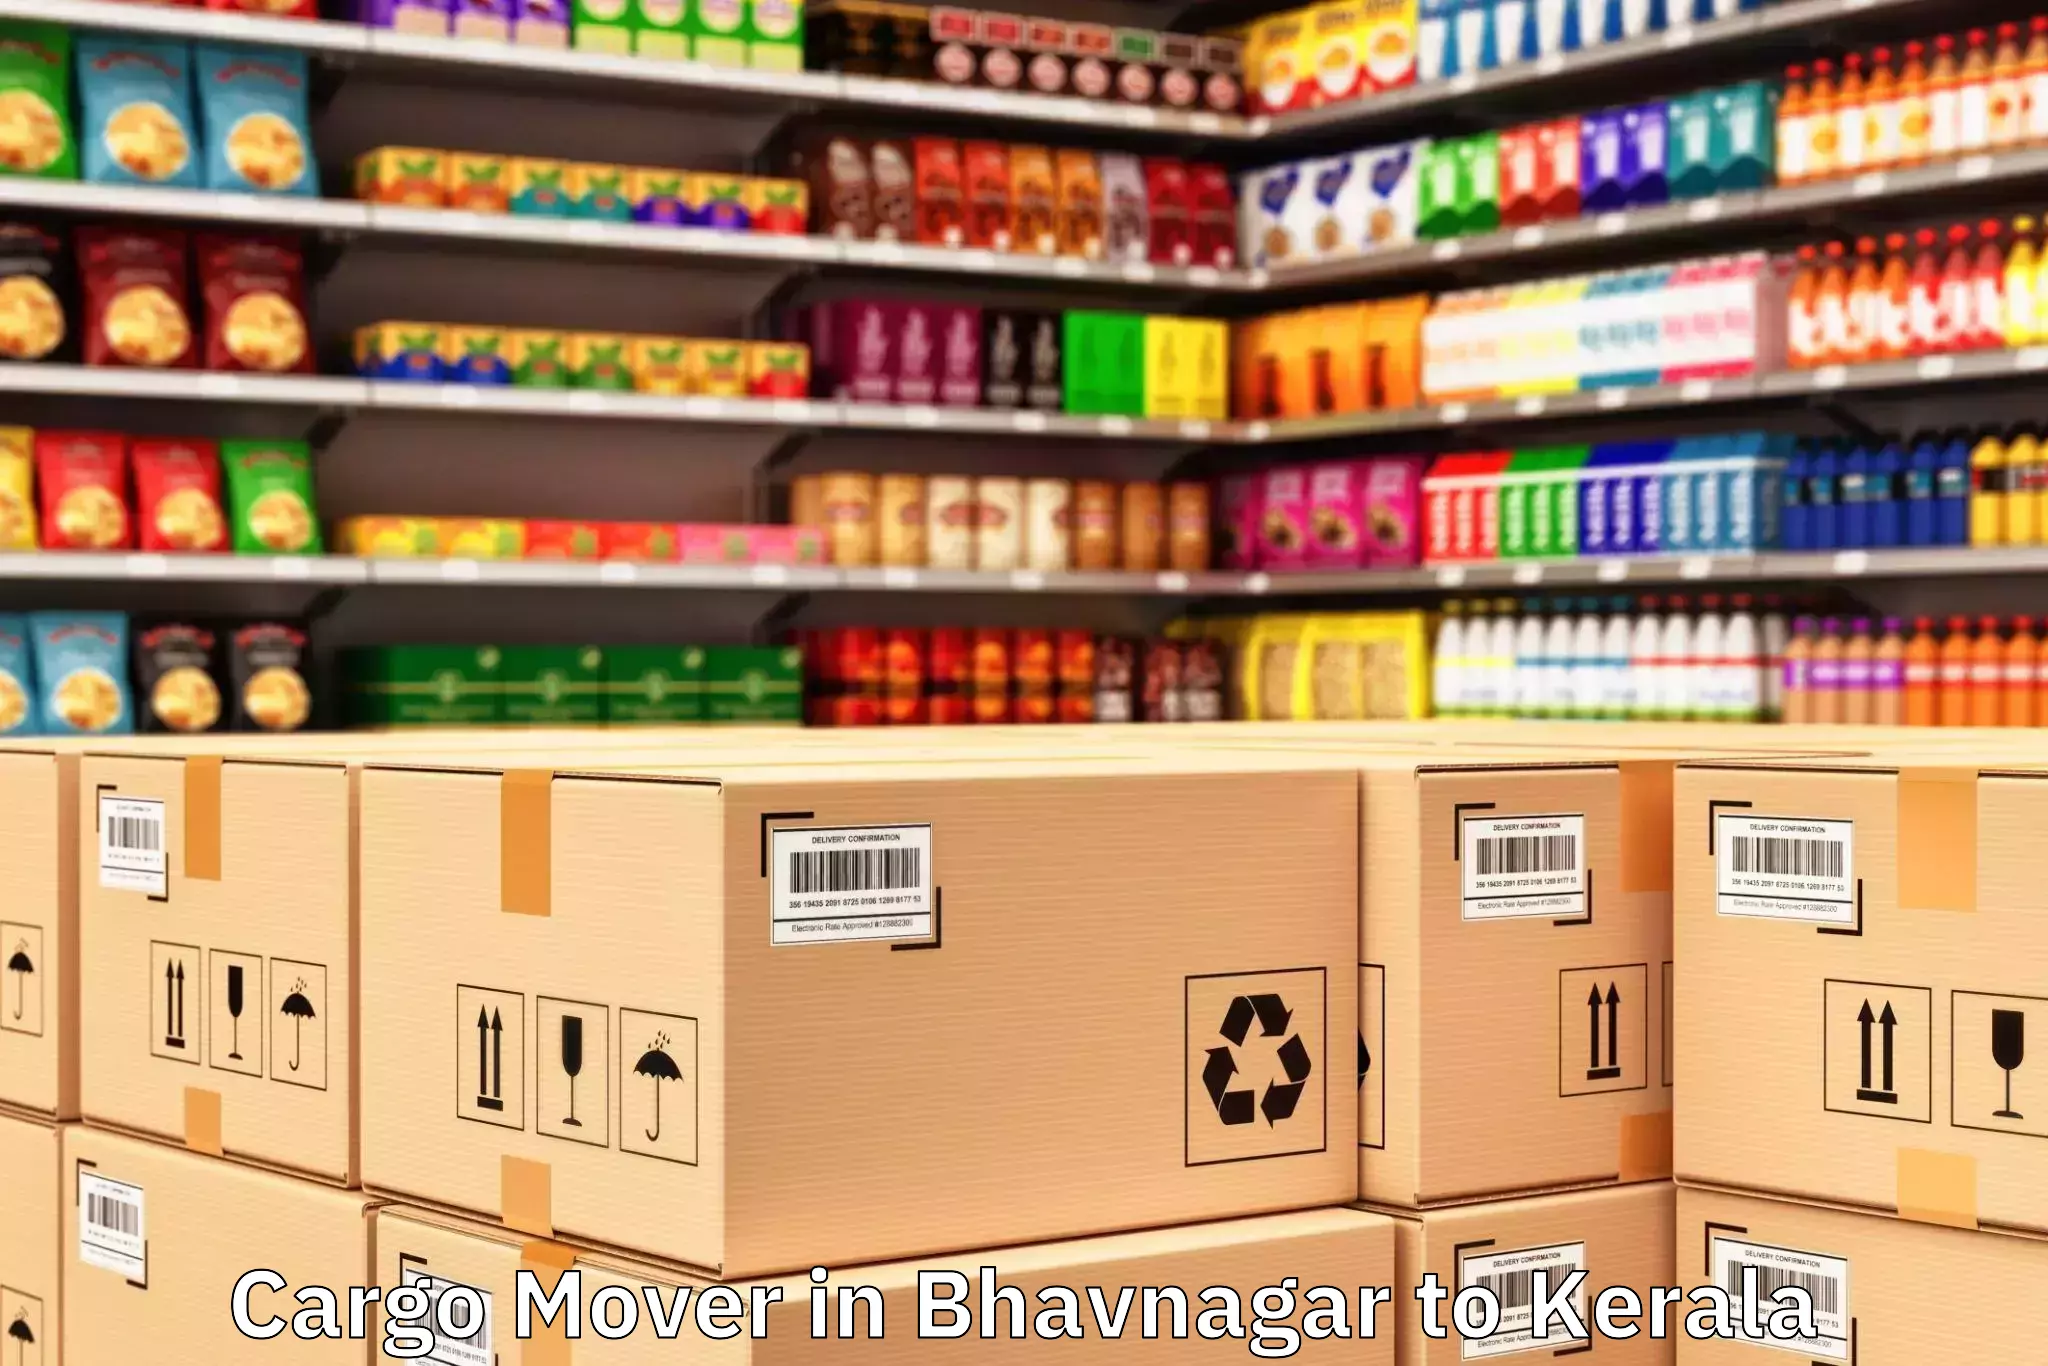 Top Bhavnagar to Kerala Cargo Mover Available